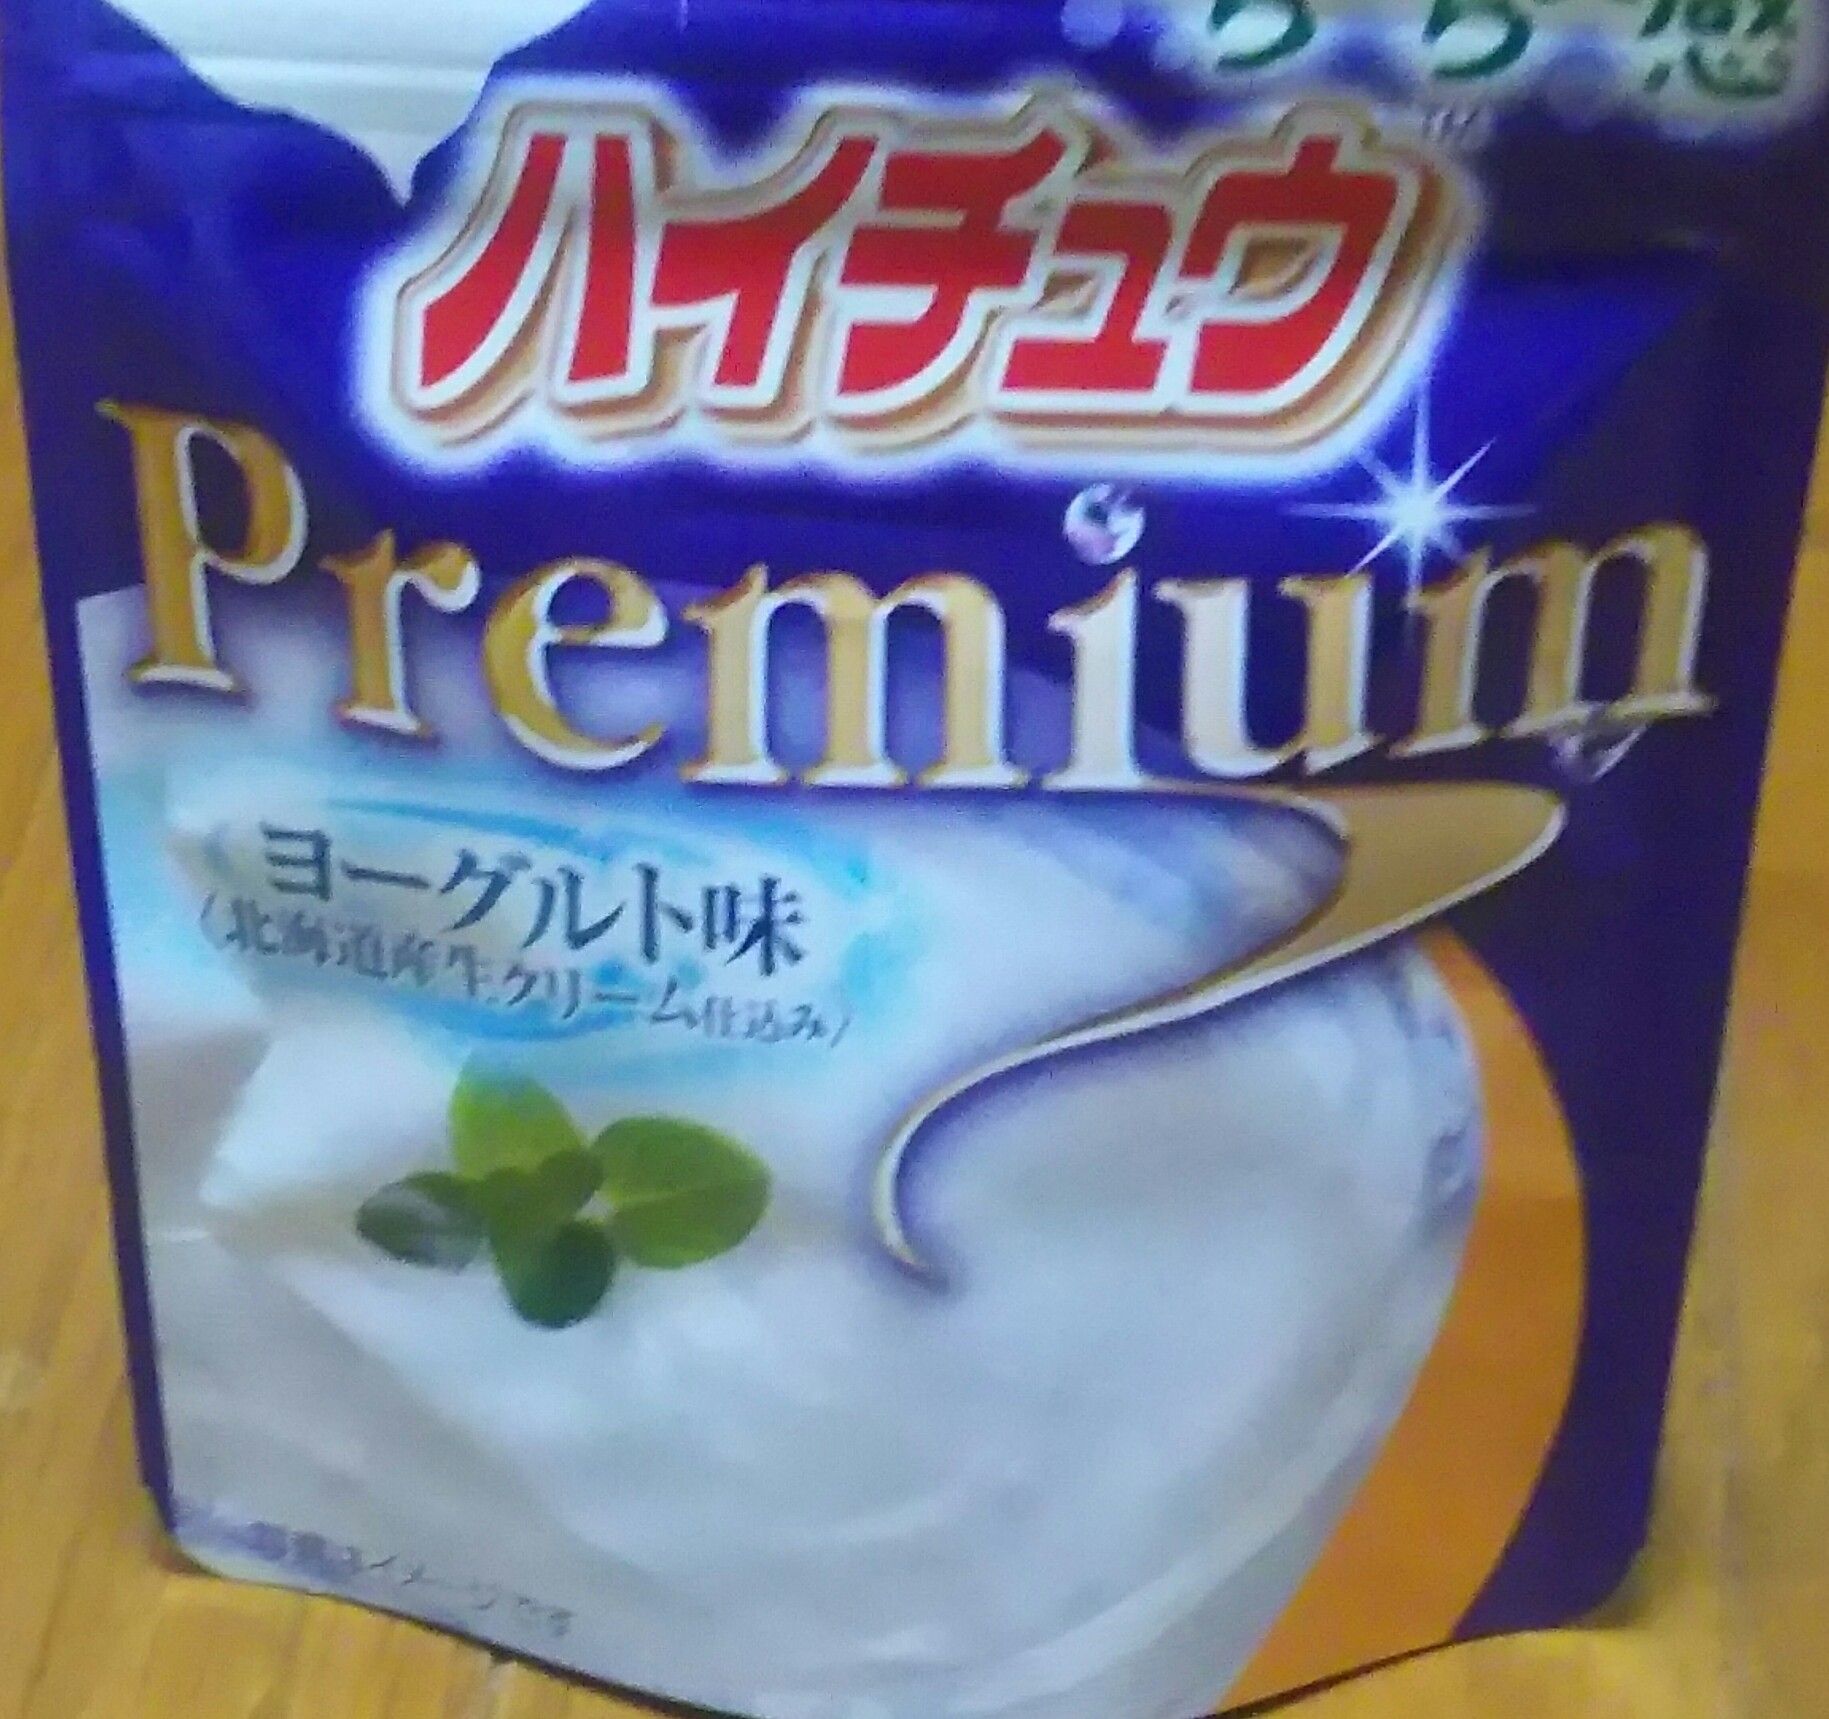 ハイチュウ premium ヨーグルト味(森永製菓)感想・レビュー